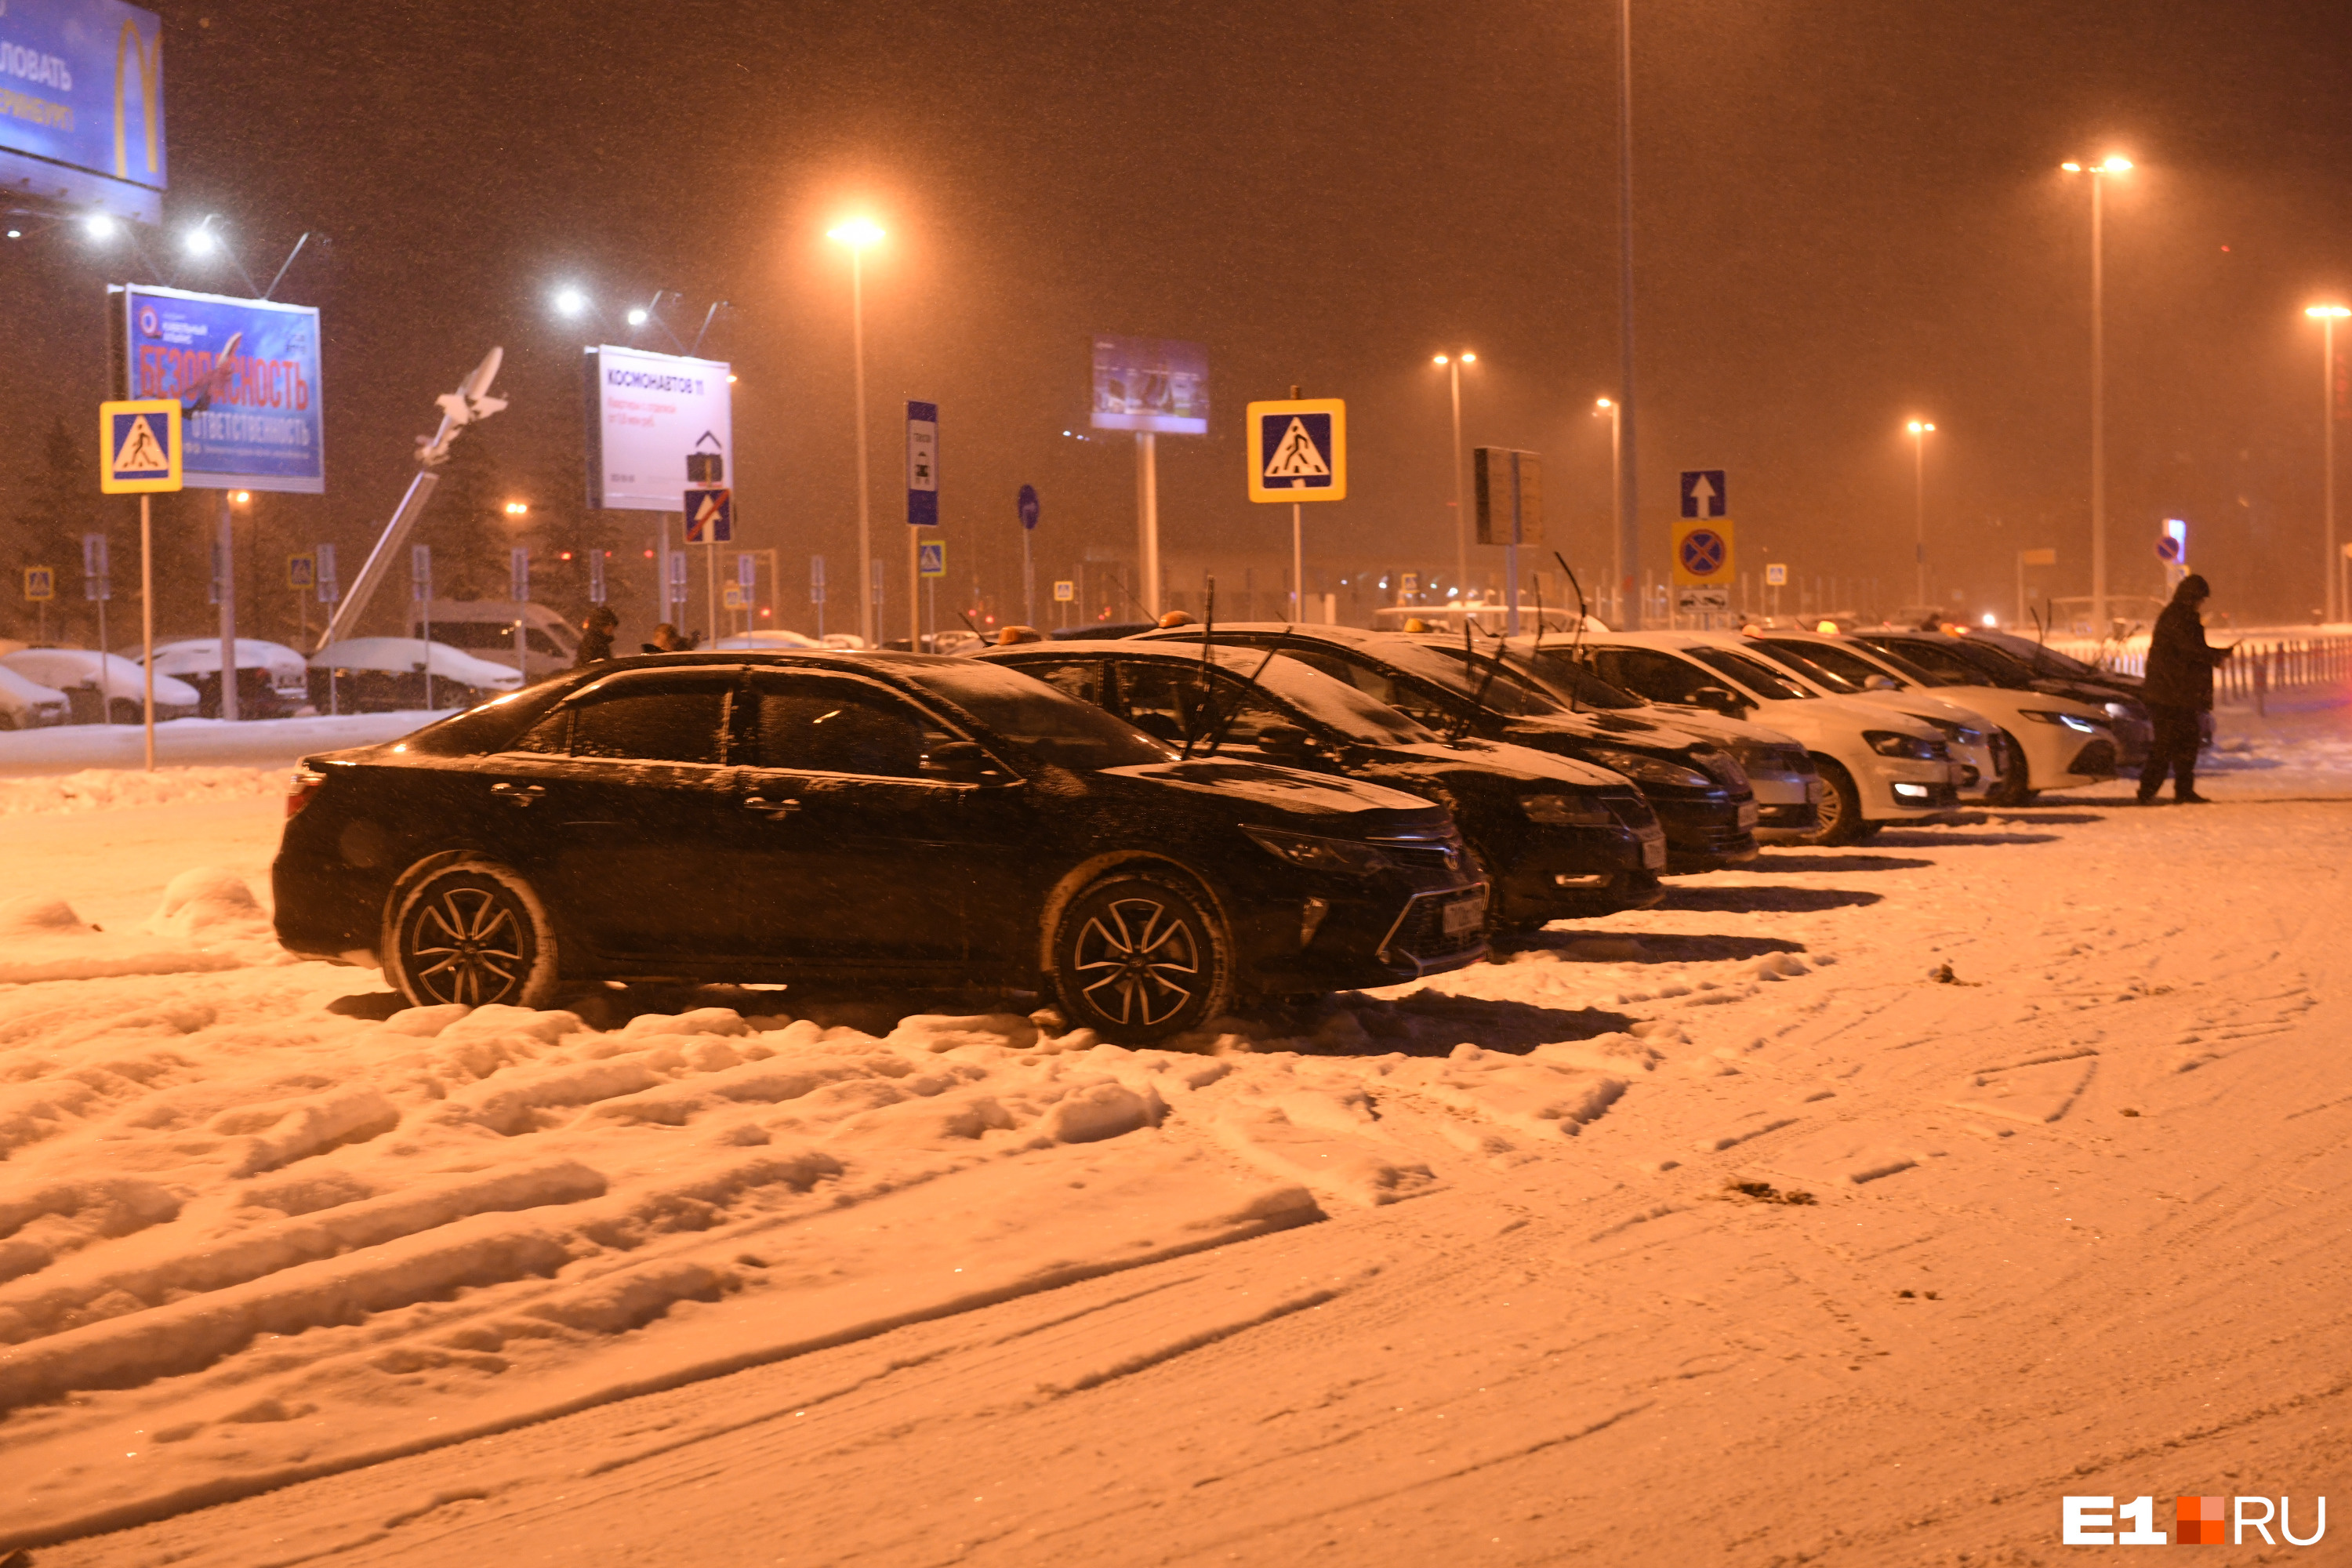 В Екатеринбурге продают таксопарк за 3 миллиона рублей. Какую прибыль обещают?